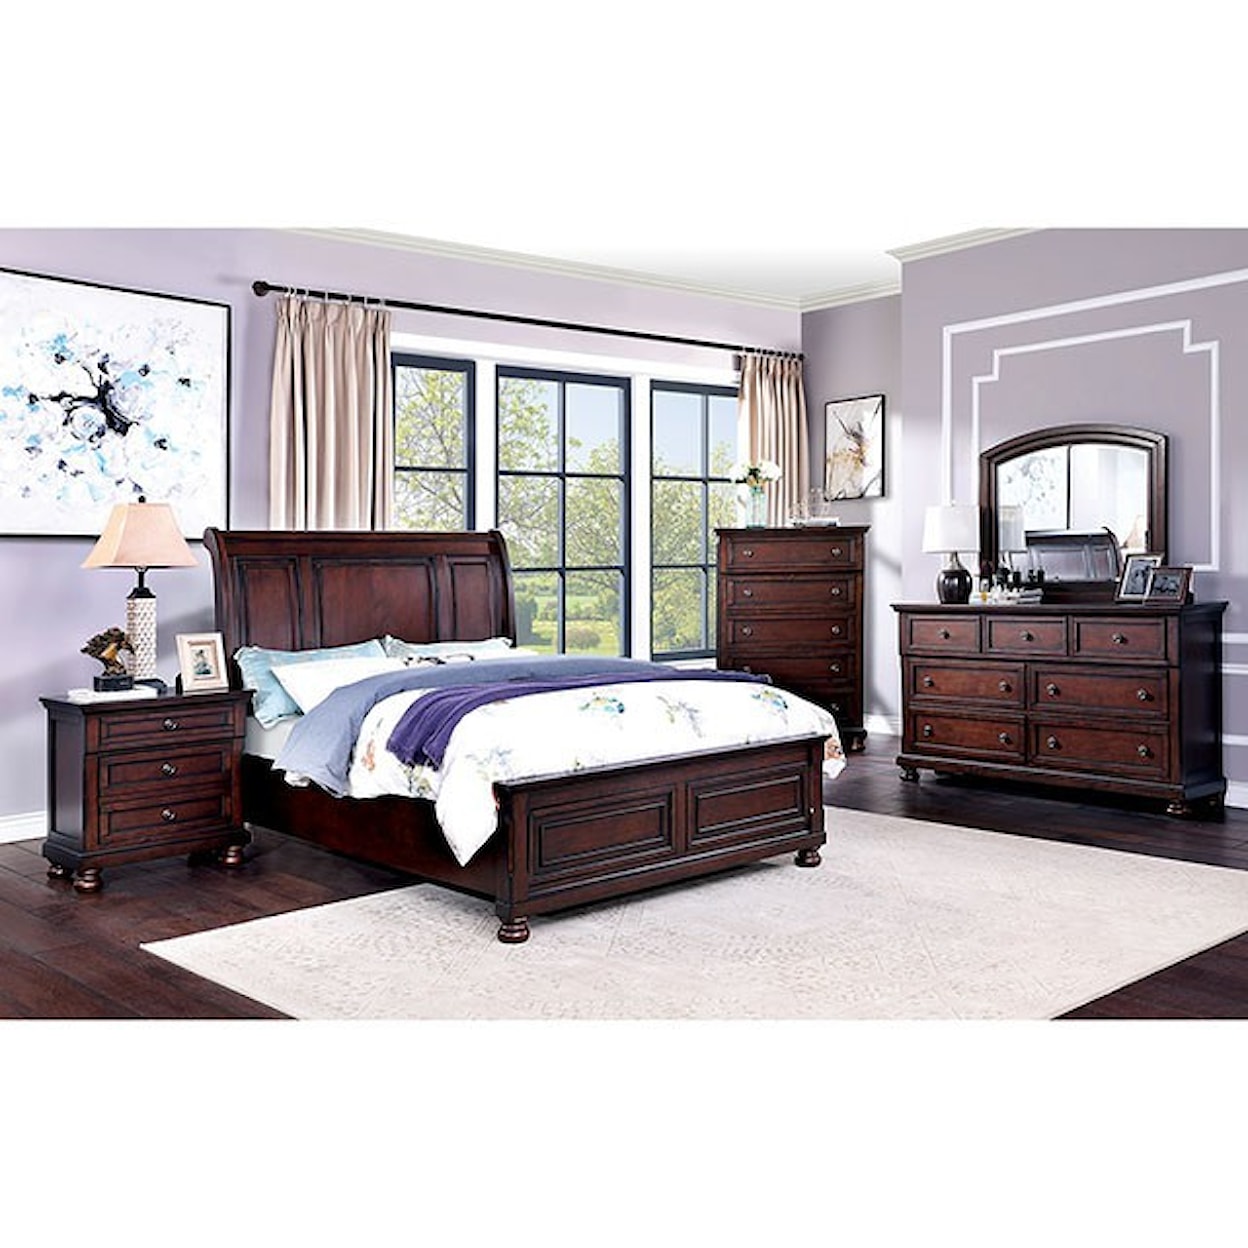 Furniture of America Wells Queen Bedroom Group 